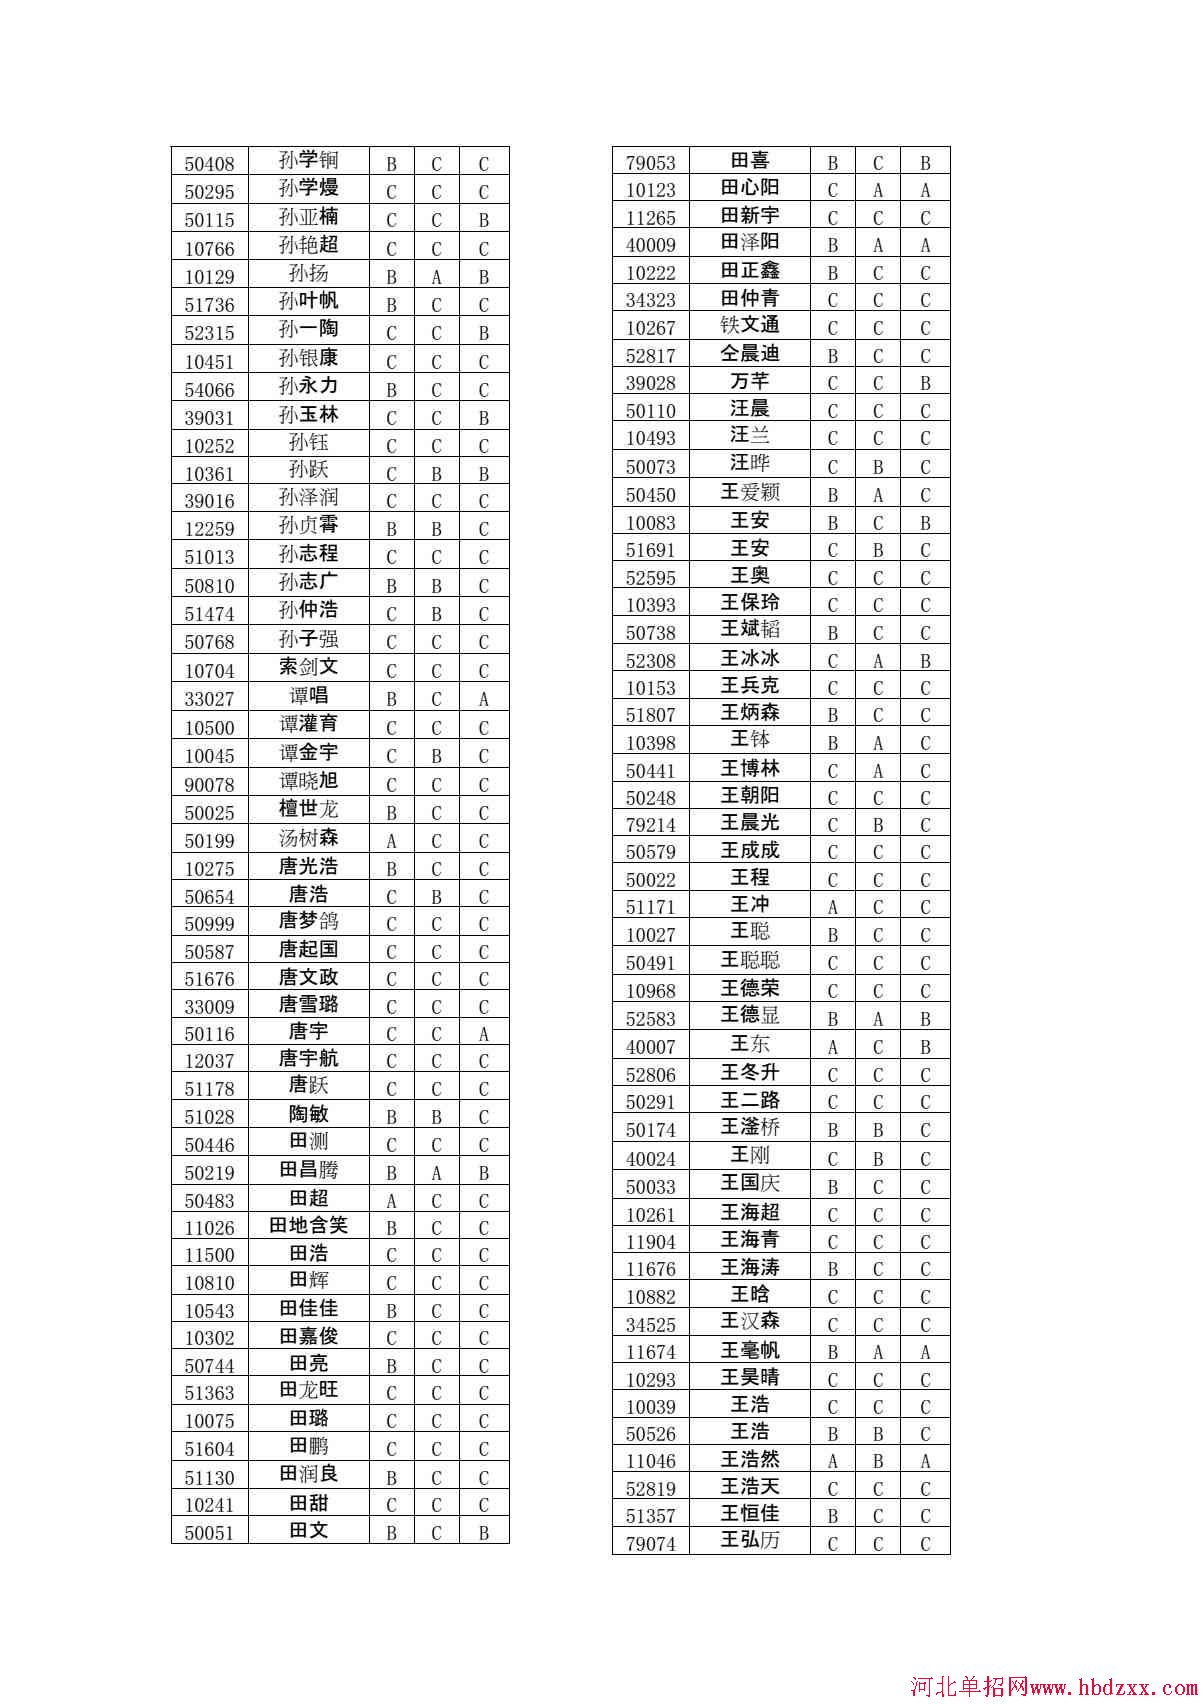 石家庄铁路职业技术学院2015年单独考试招生学问有免考资格考生名单 图3